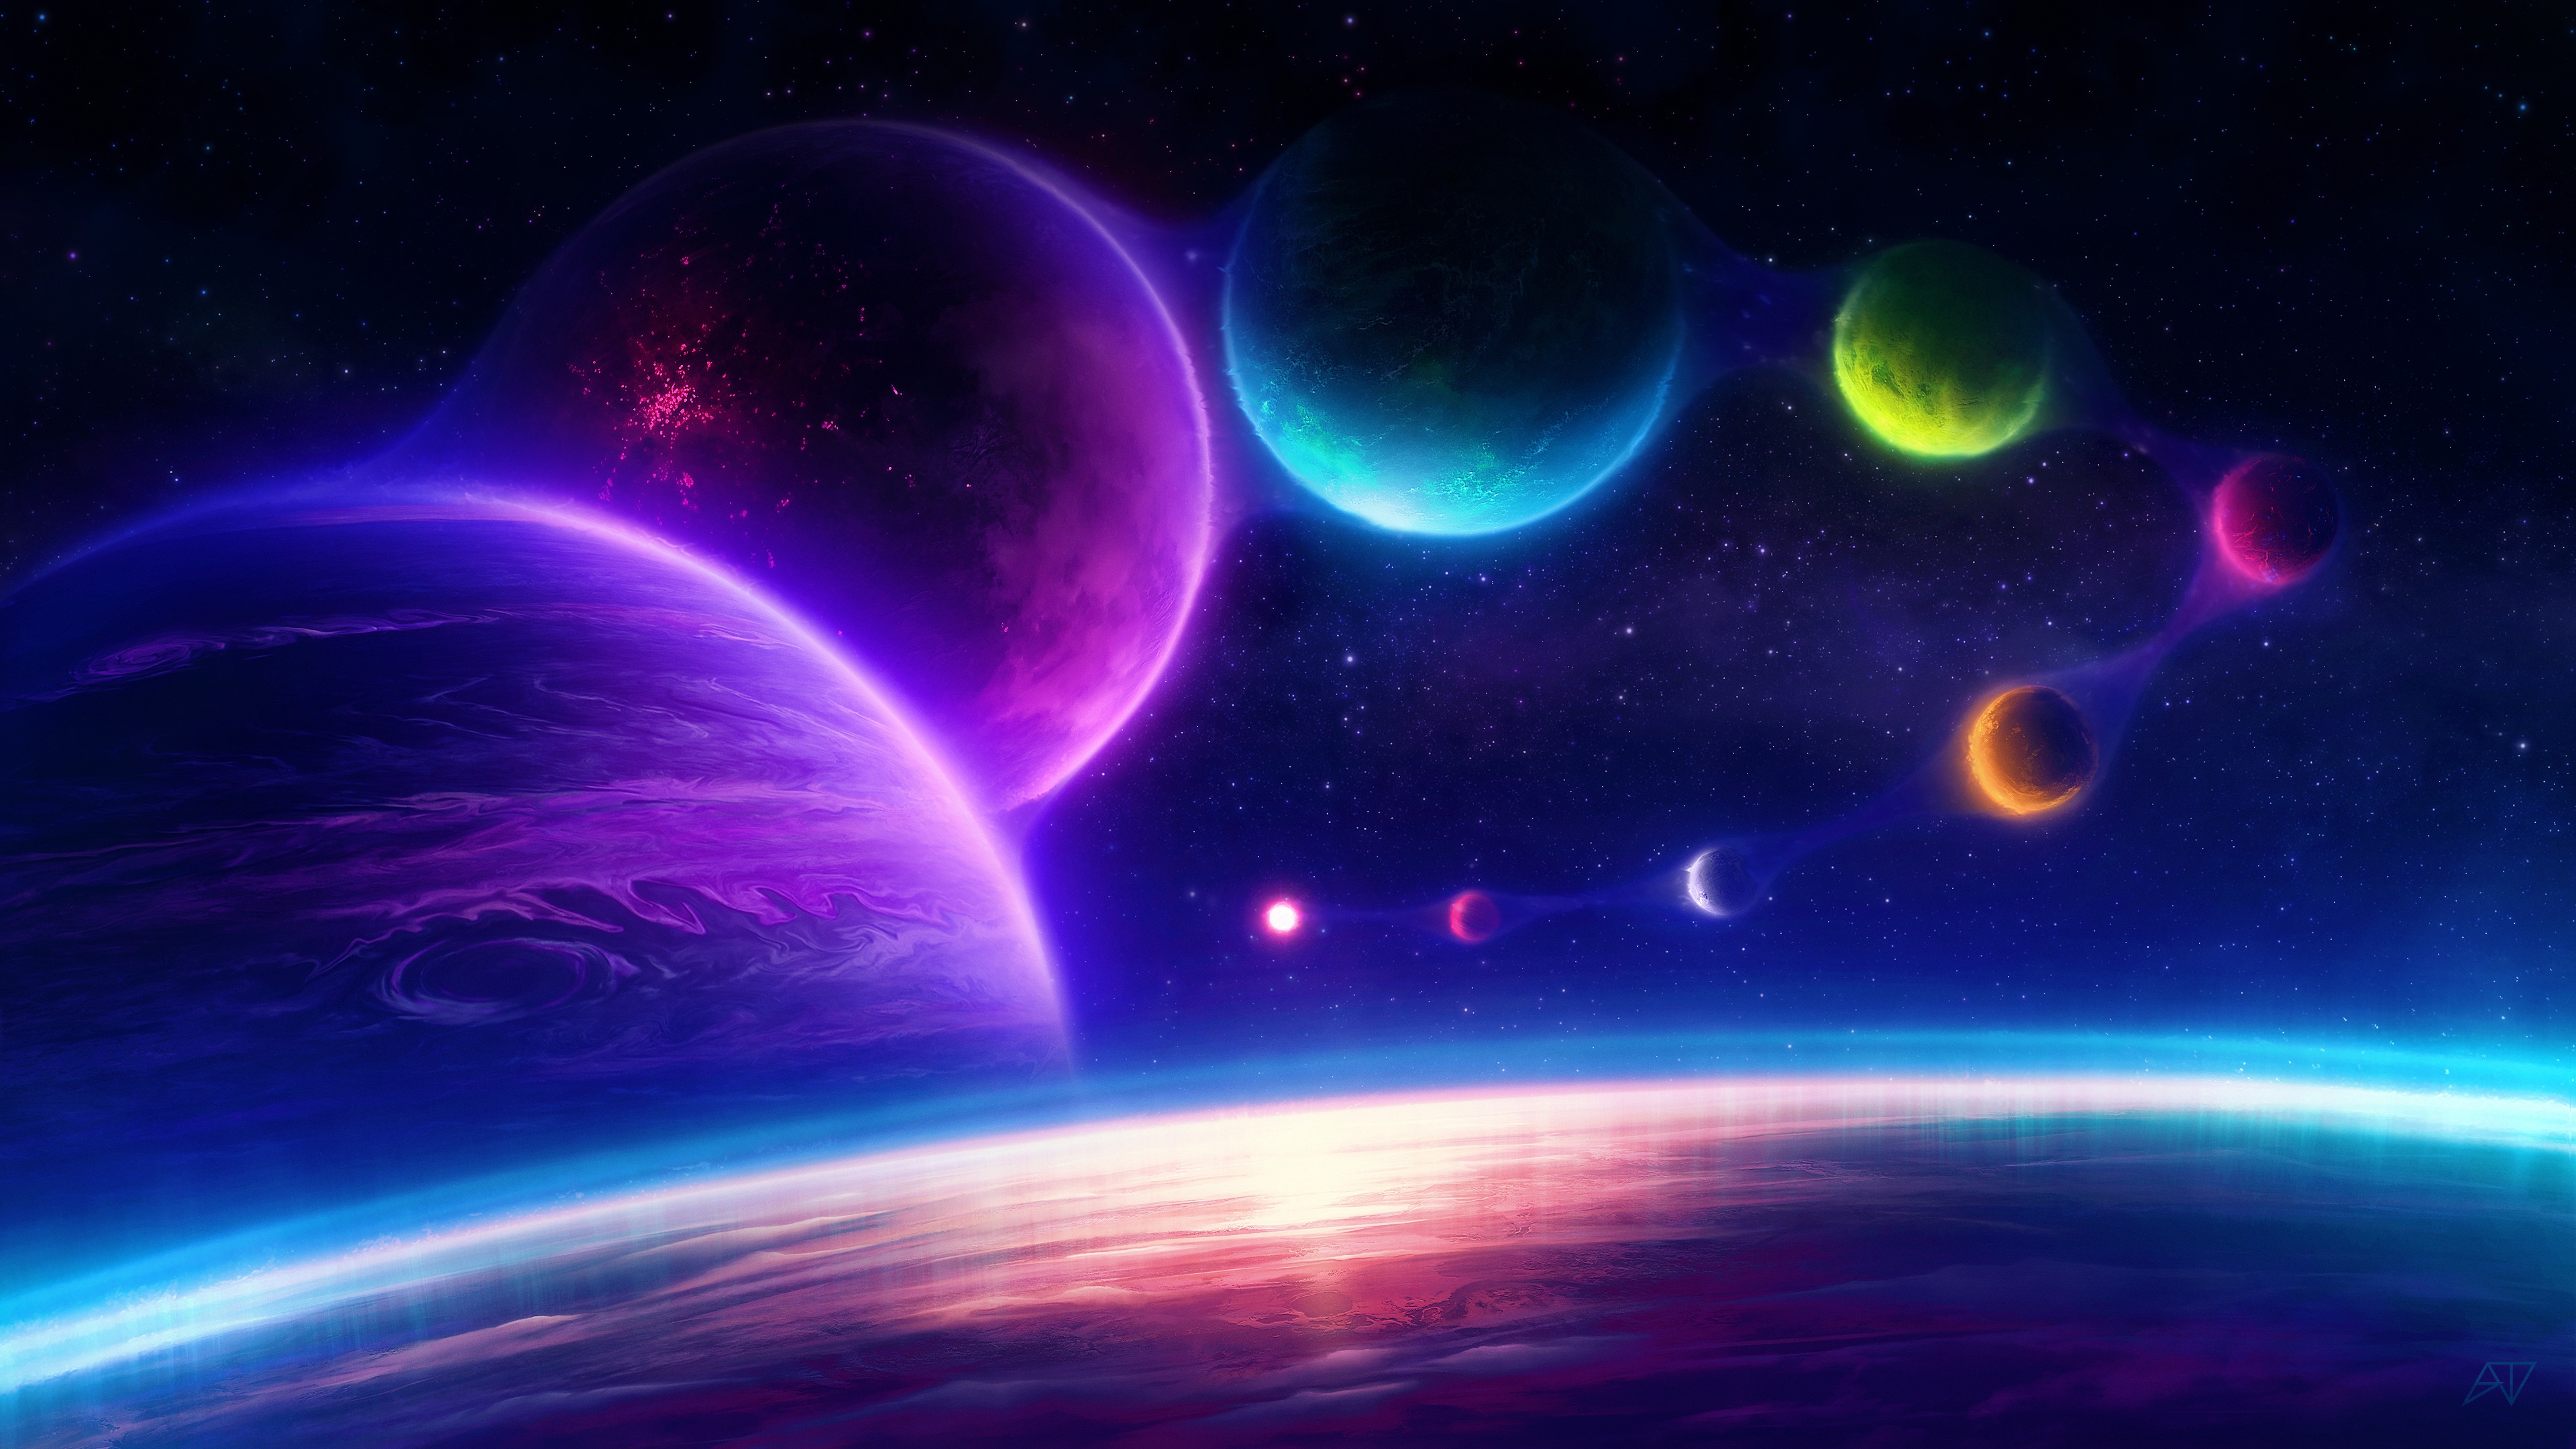 Sci Fi Planet 4k Ultra HD Wallpaper by Adam Taylor